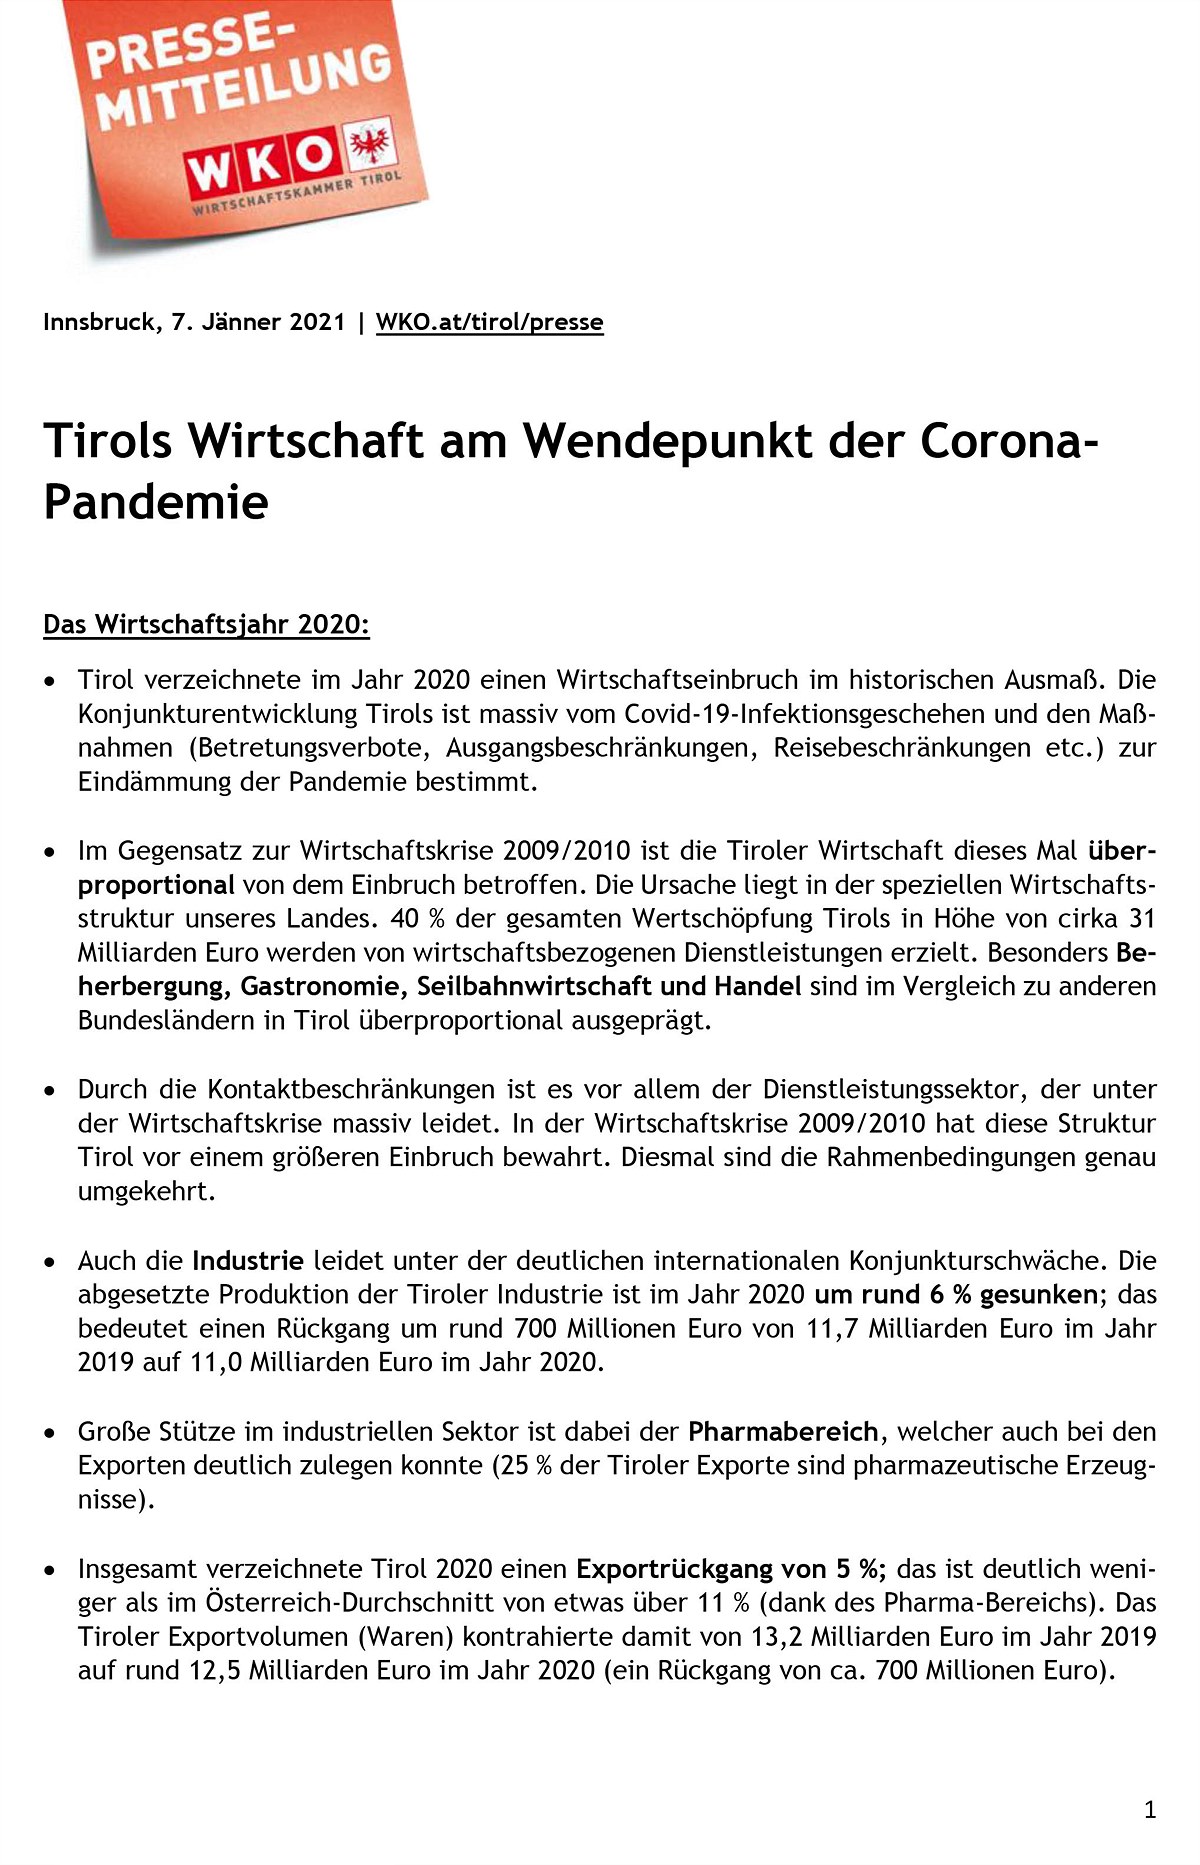 Zahlen & Daten: Tirols Wirtschaft am Wendepunkt der Corona-Pandemie